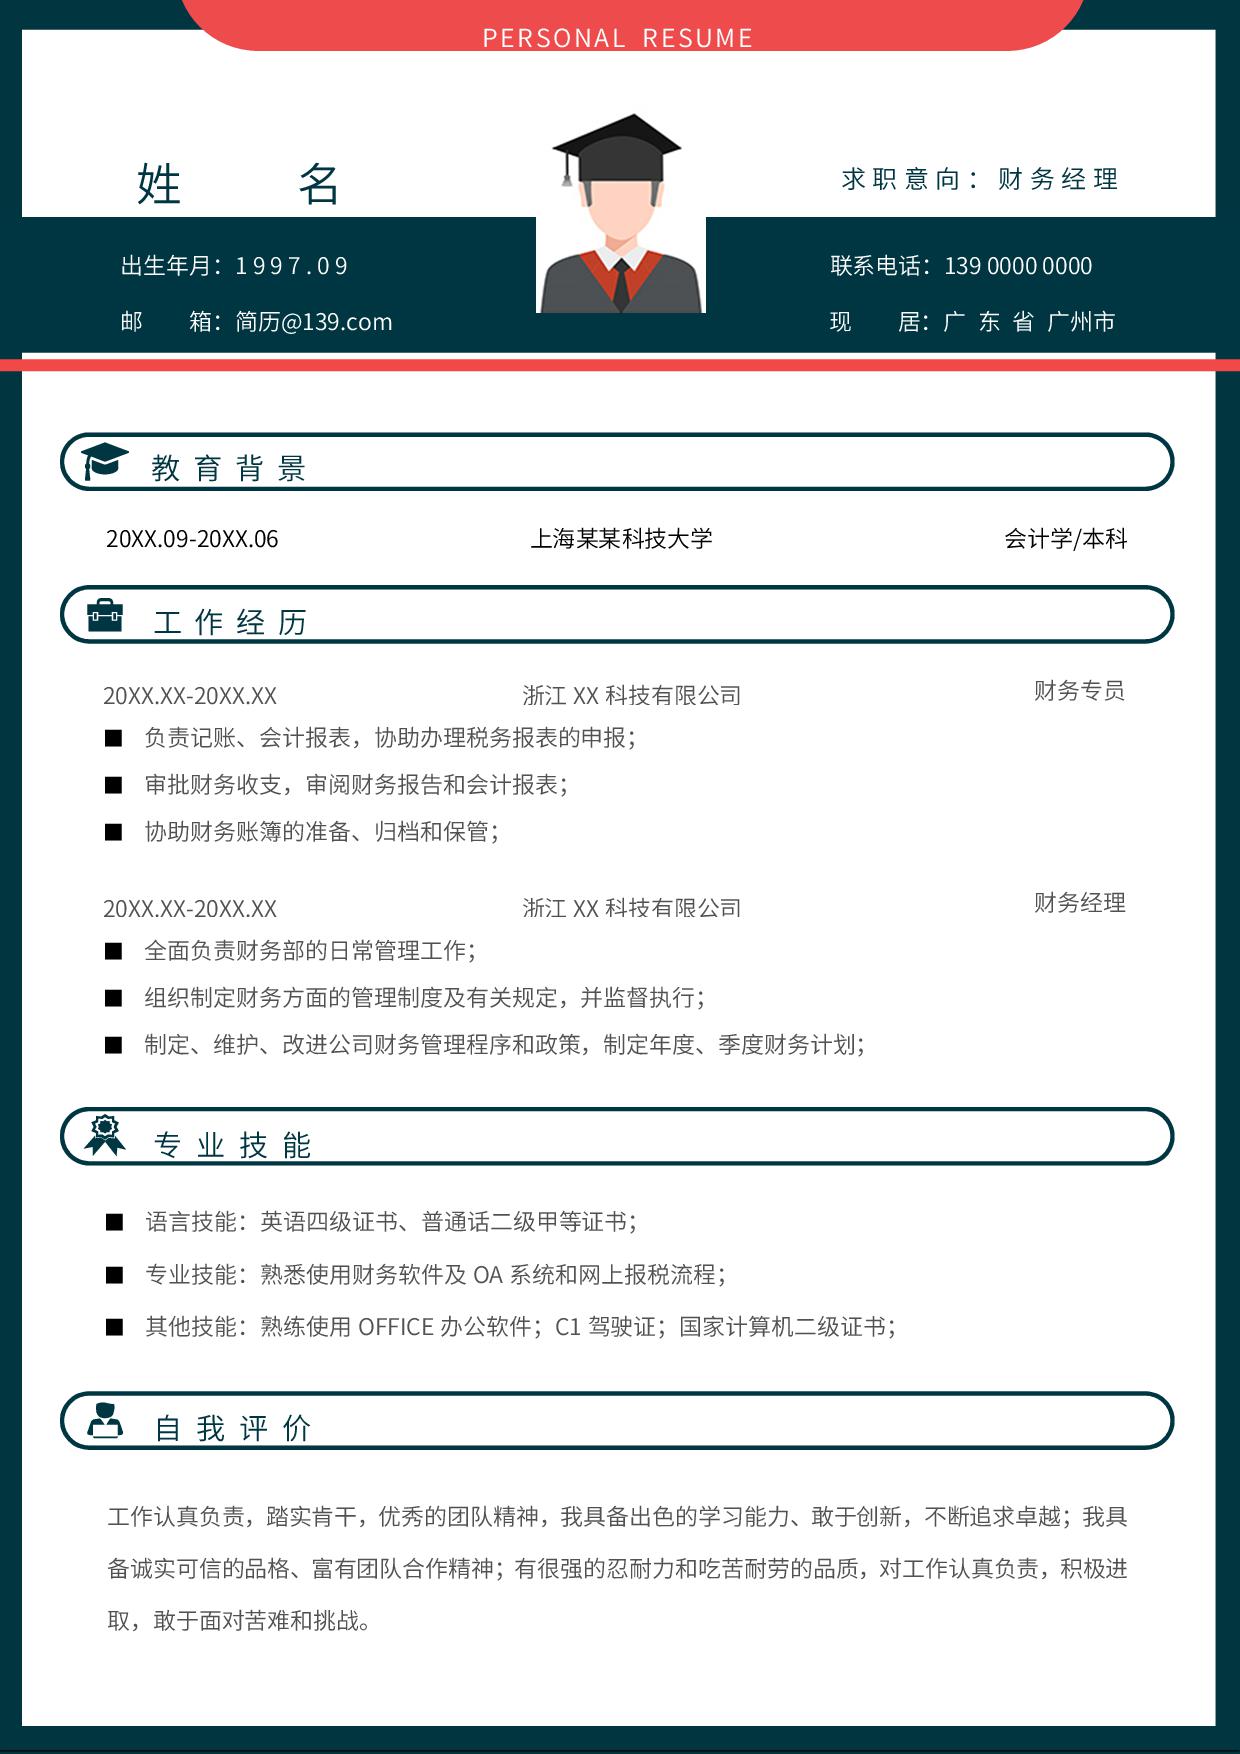 上海科技大学财务经理求职简历word模板